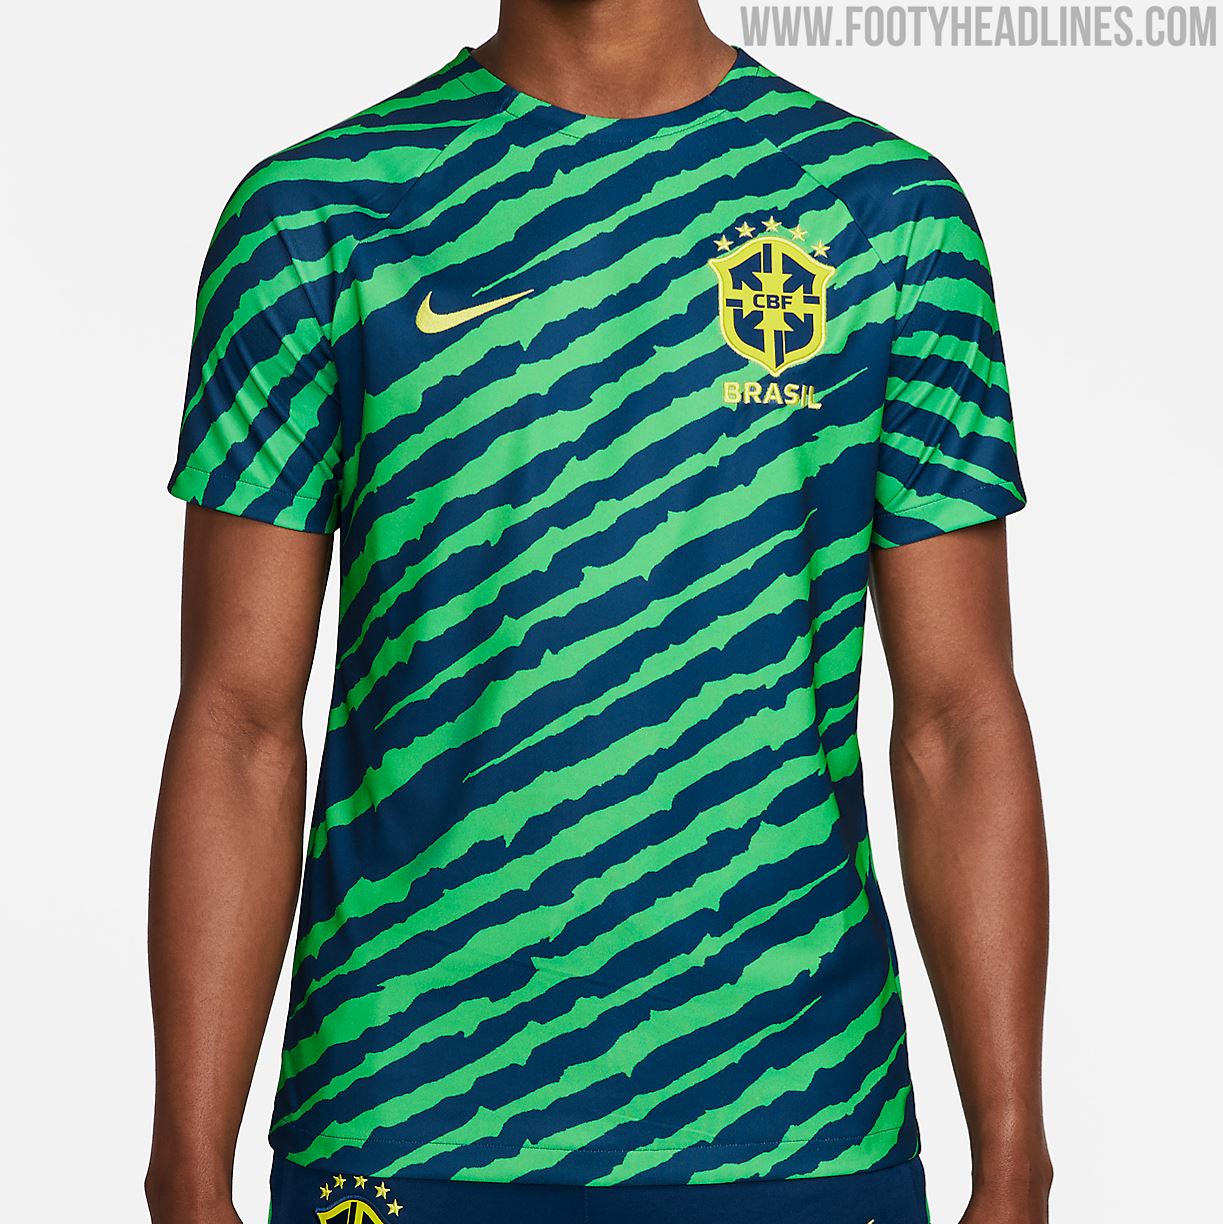 Brasilien WM 2022 Pre-Match-Shirt geleakt - Nur Fussball